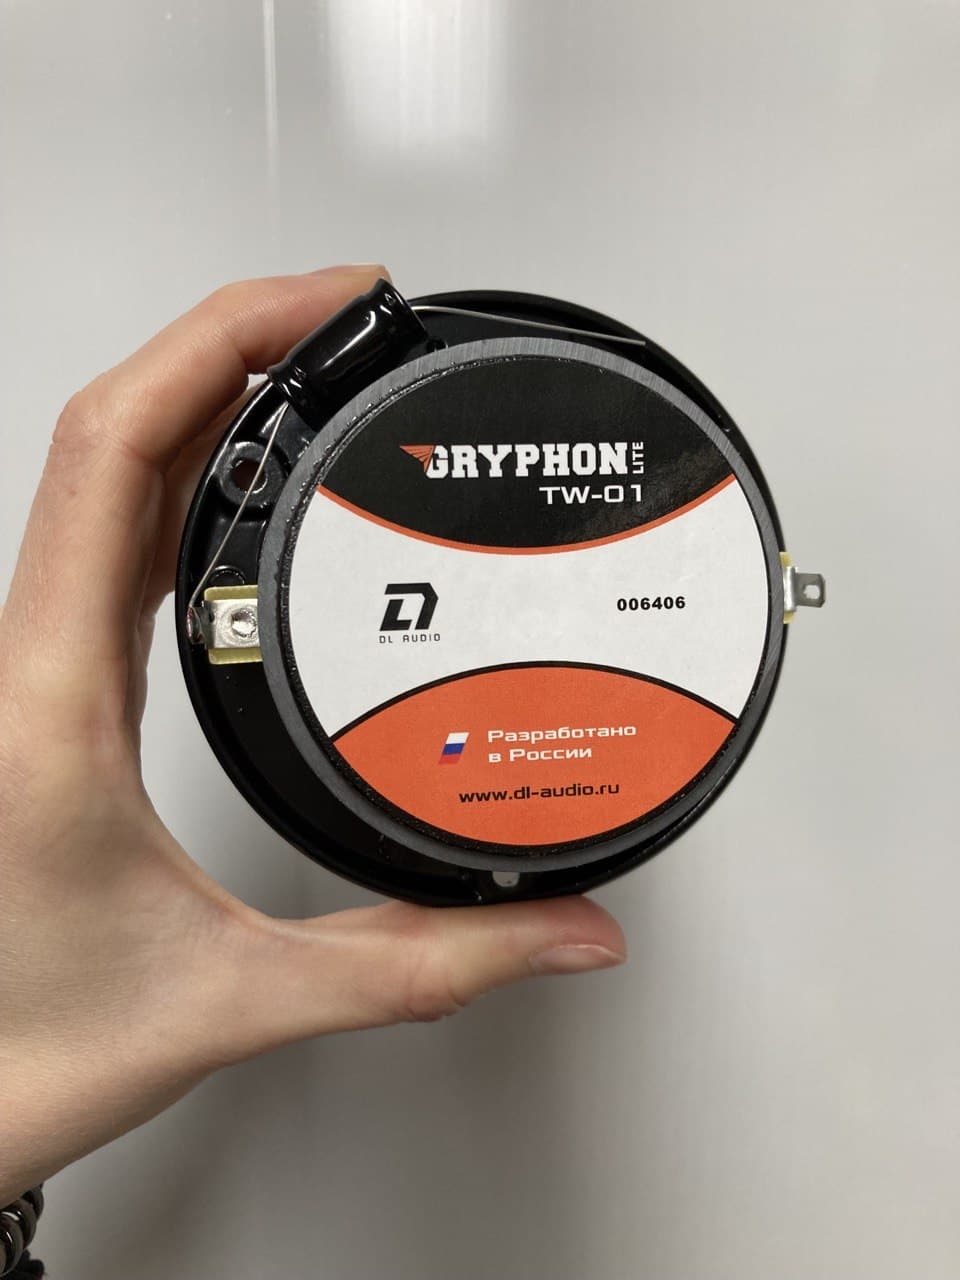 Рупор Dl Audio Gryphone Lite TW-01